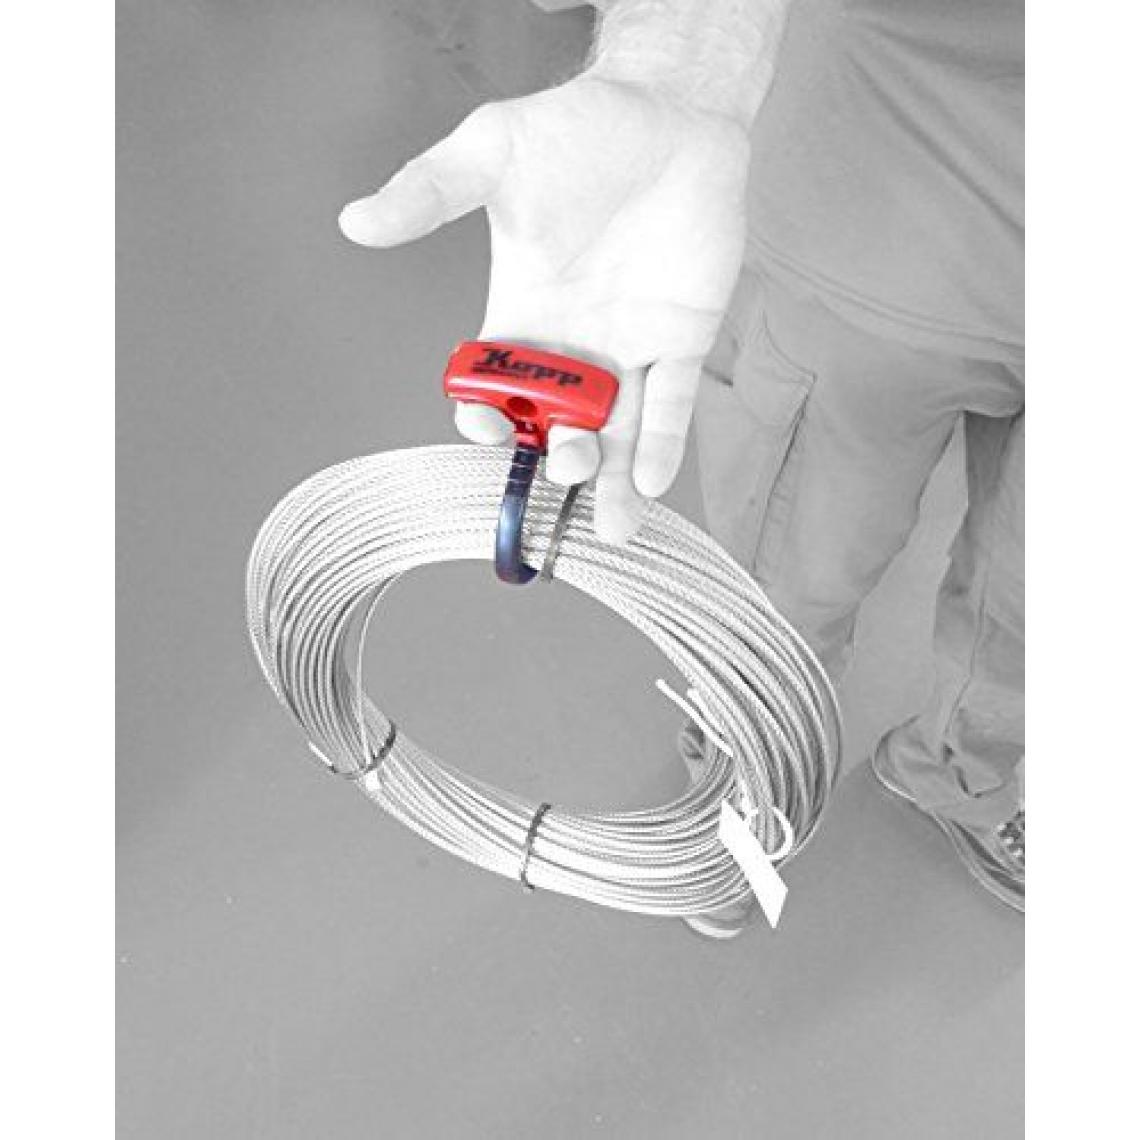 Inconnu - Serre-câble Kopp, multicolore, 372701002 - Accessoires de câblage